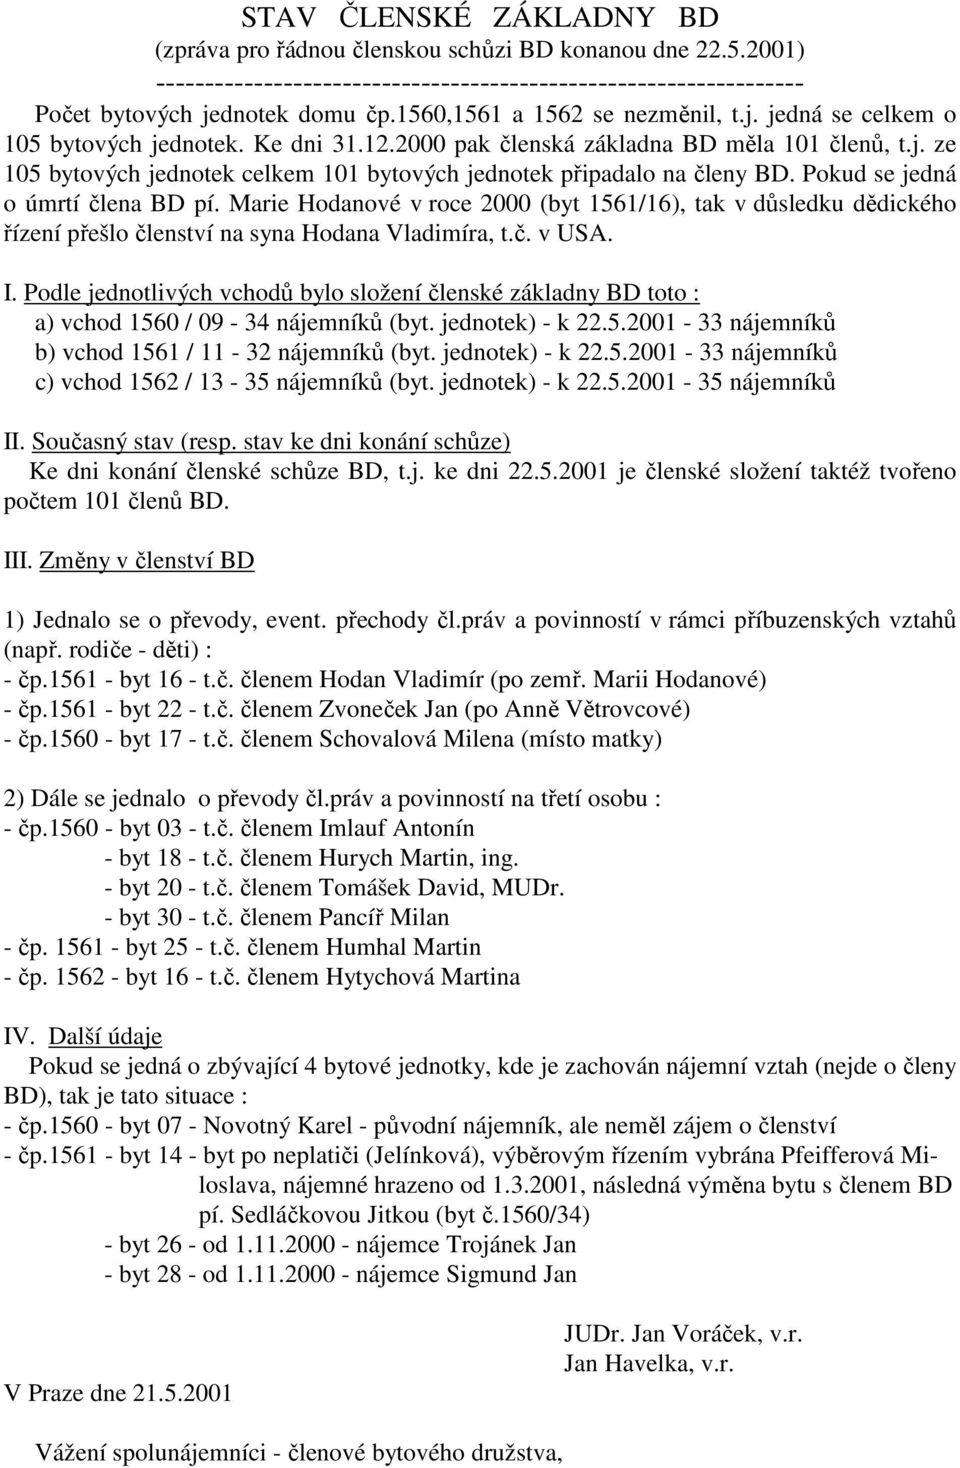 Pokud se jedná o úmrtí člena BD pí. Marie Hodanové v roce 2000 (byt 1561/16), tak v důsledku dědického řízení přešlo členství na syna Hodana Vladimíra, t.č. v USA. I.